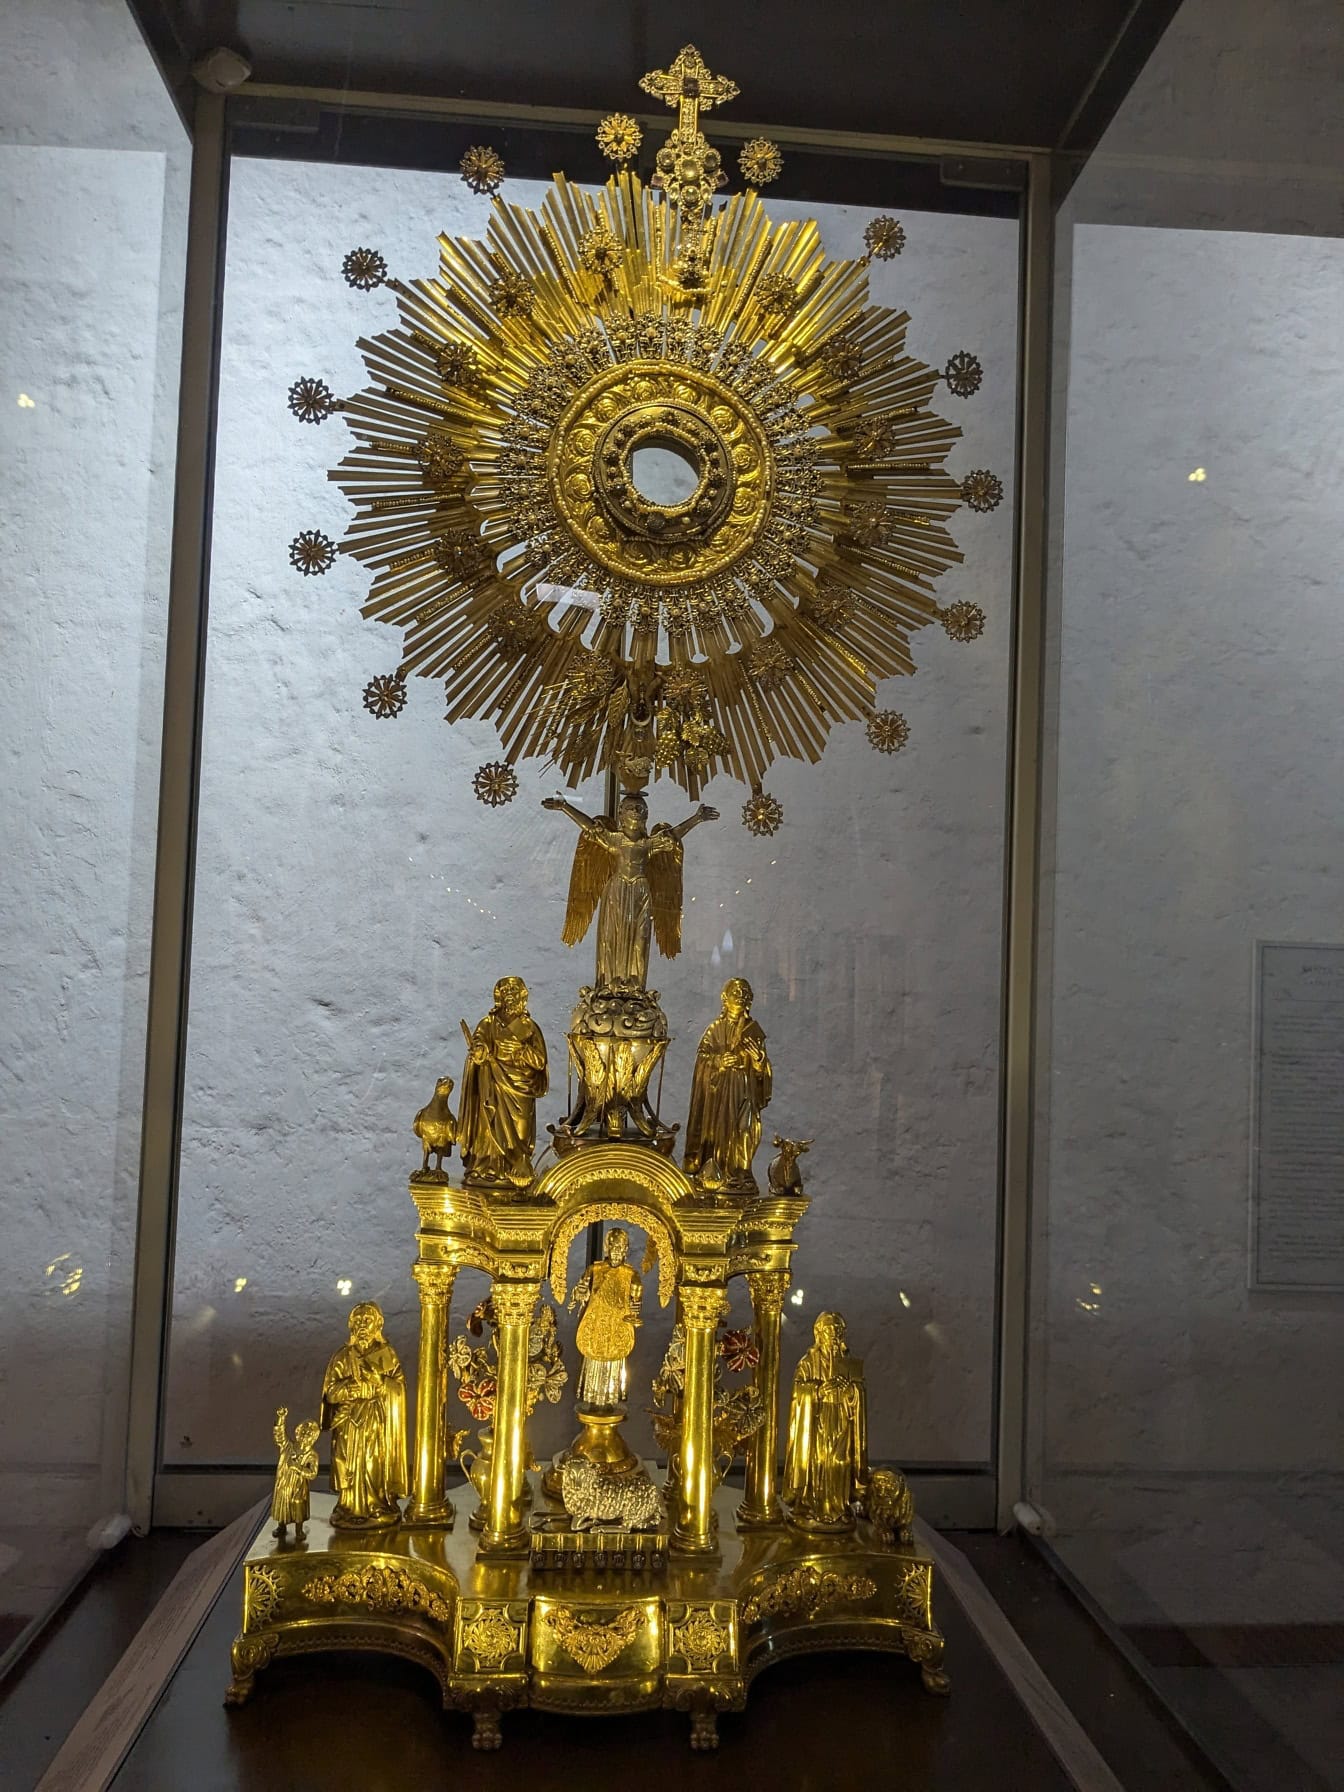 Το άγαλμα Monstrance, ένα μοναδικό χρυσό αντικείμενο στο μουσείο του μοναστηριού της Δομινικανής Δεύτερης Τάξης της Santa Catalina de Siena στην Arequipa στο Περού